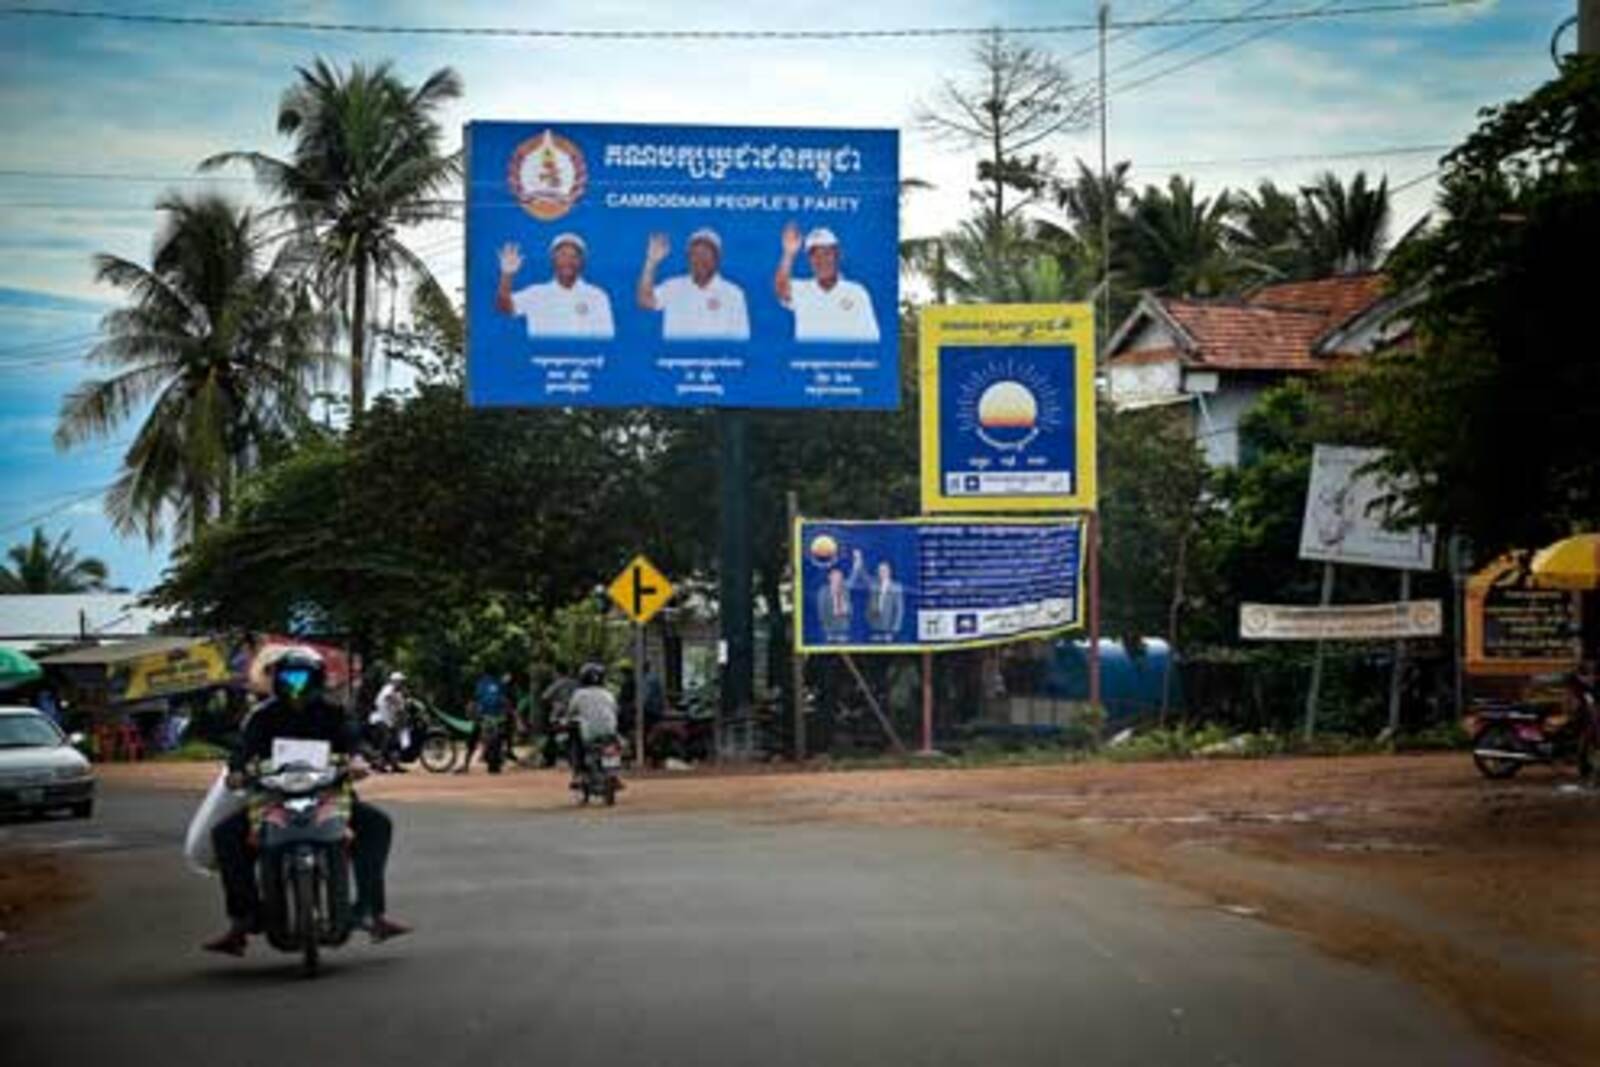 CambodiaElectionPosters